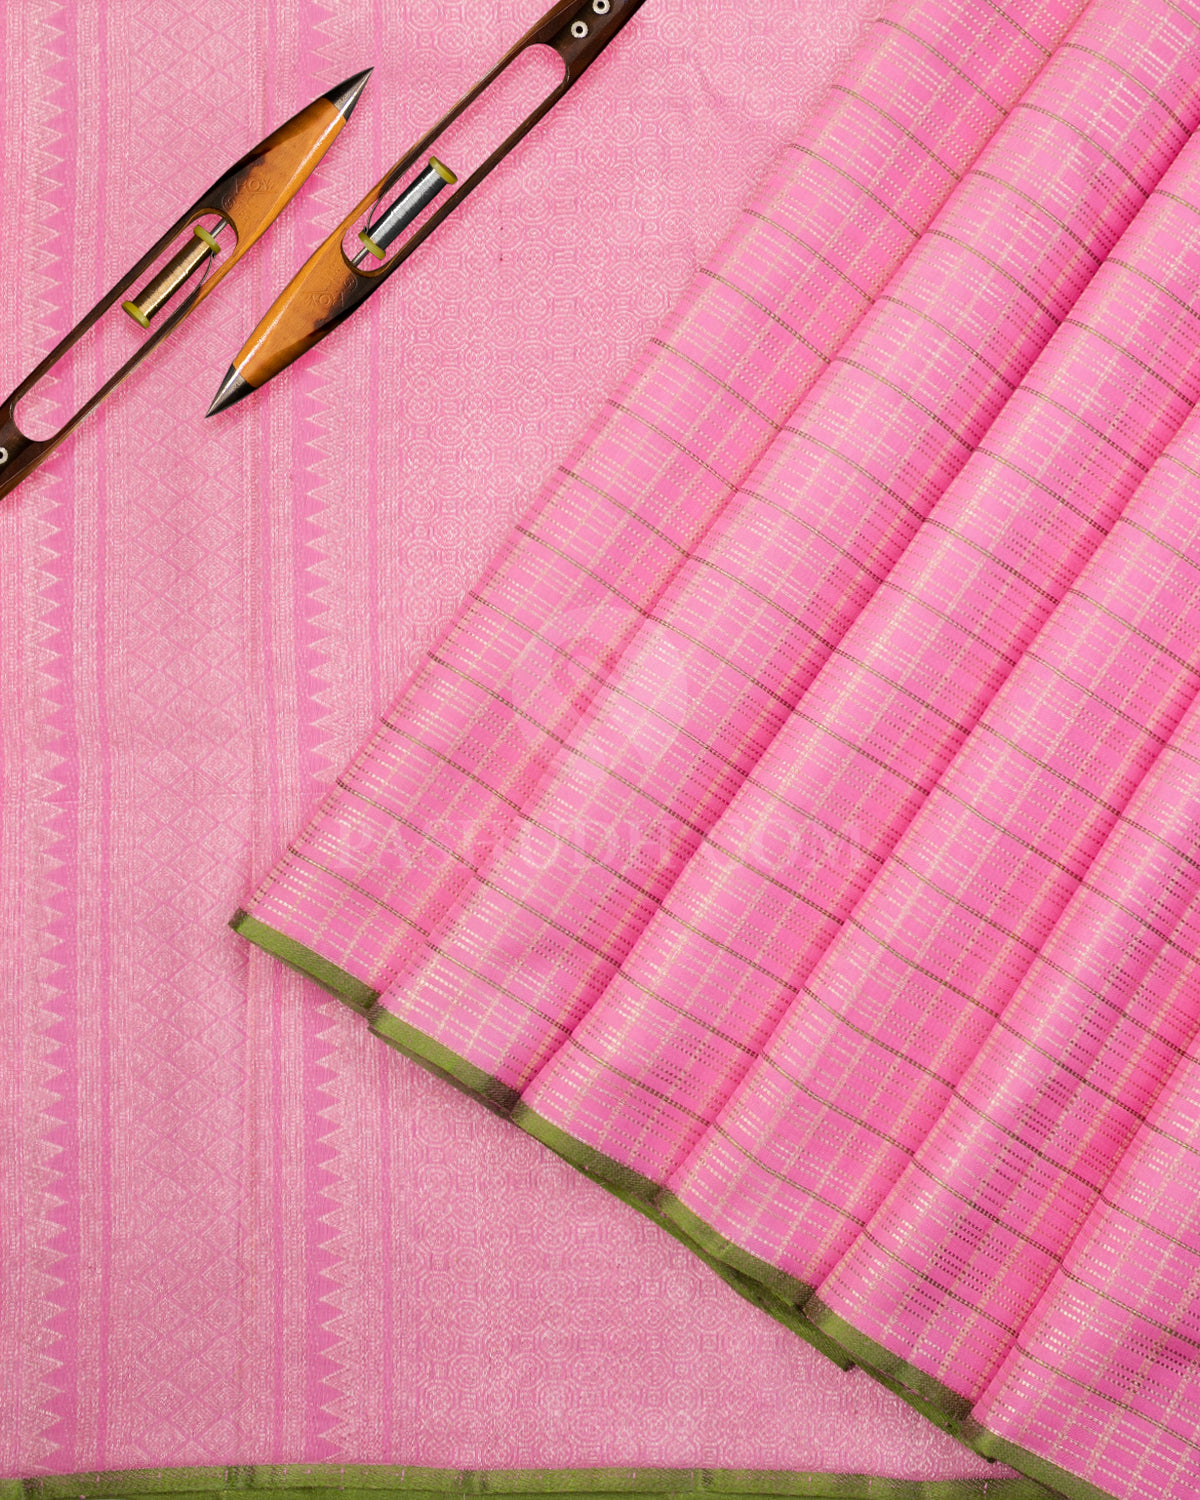 Rose Pink & Parrot Green Kanjivaram Silk Saree - S1035(A) - View 2